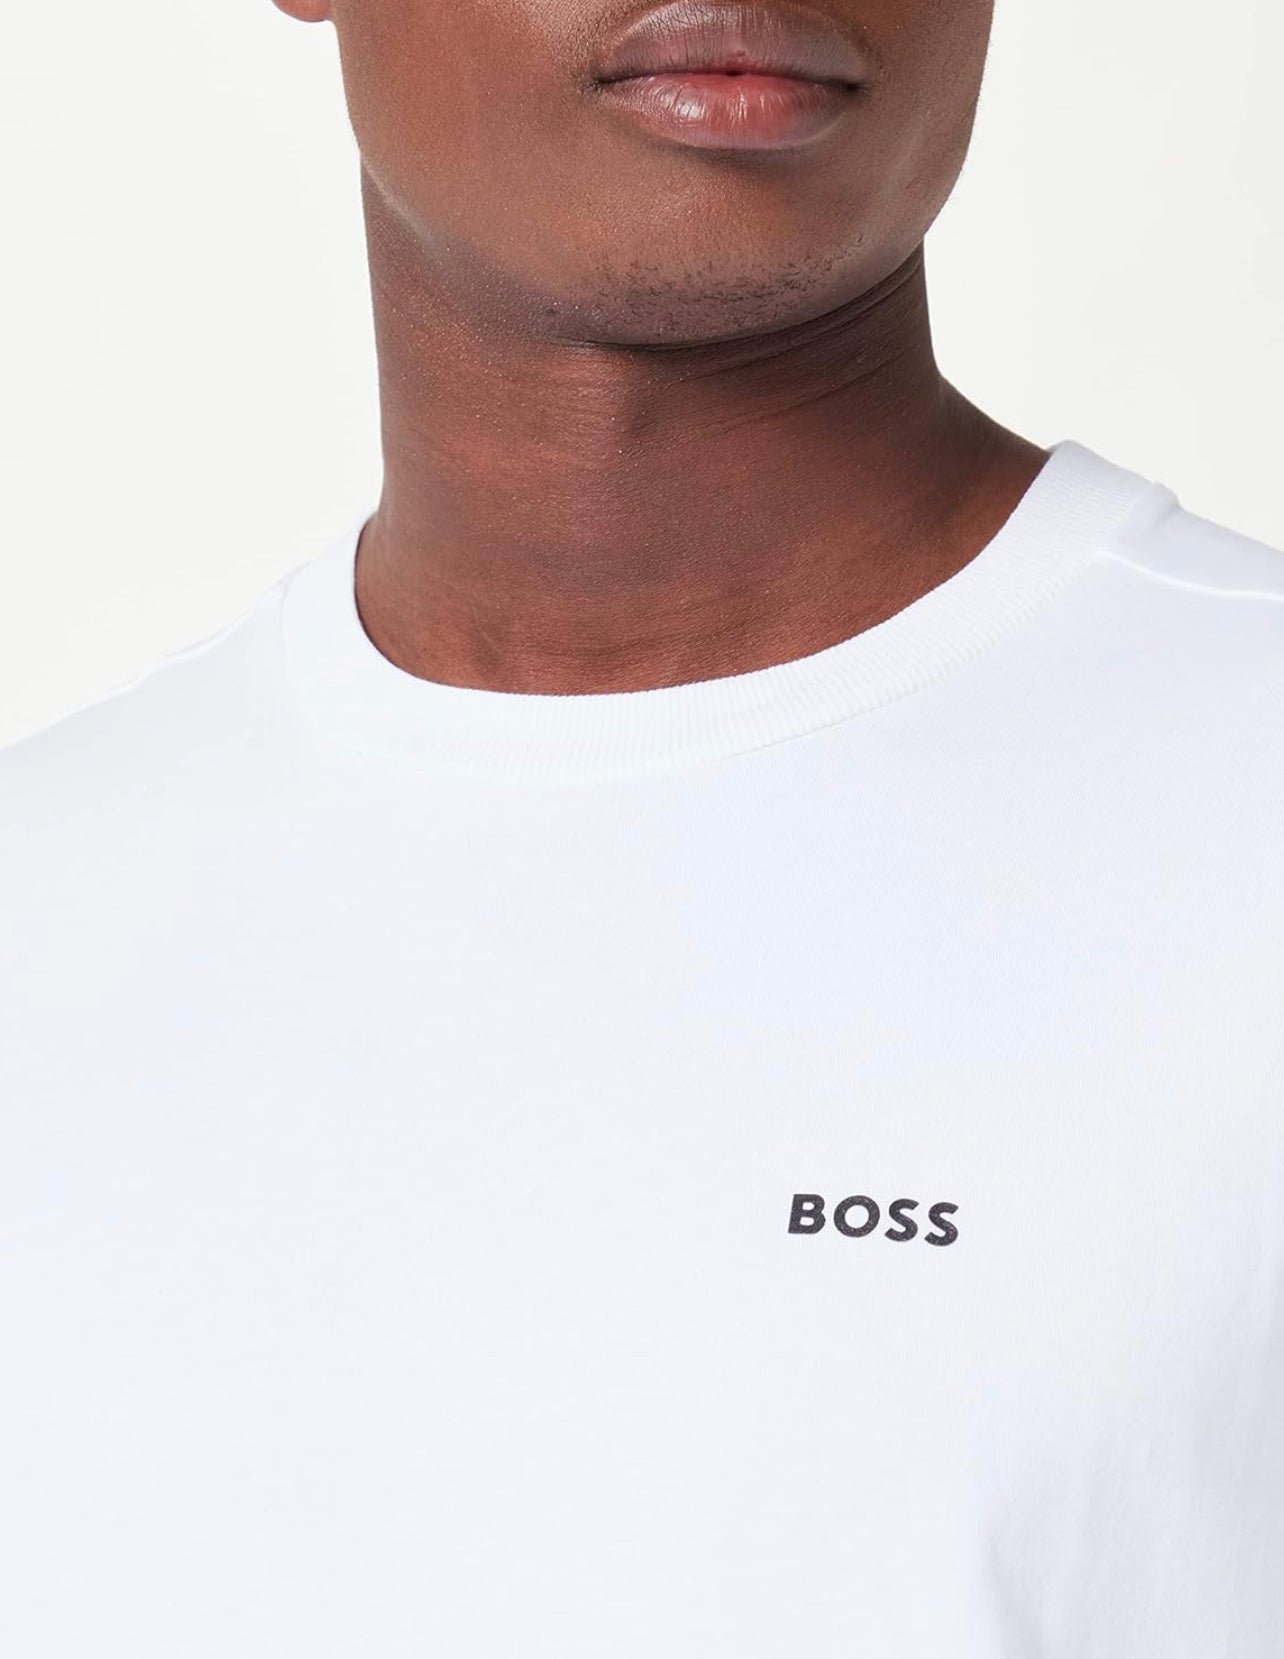 Hugo Boss Witte T-shirt